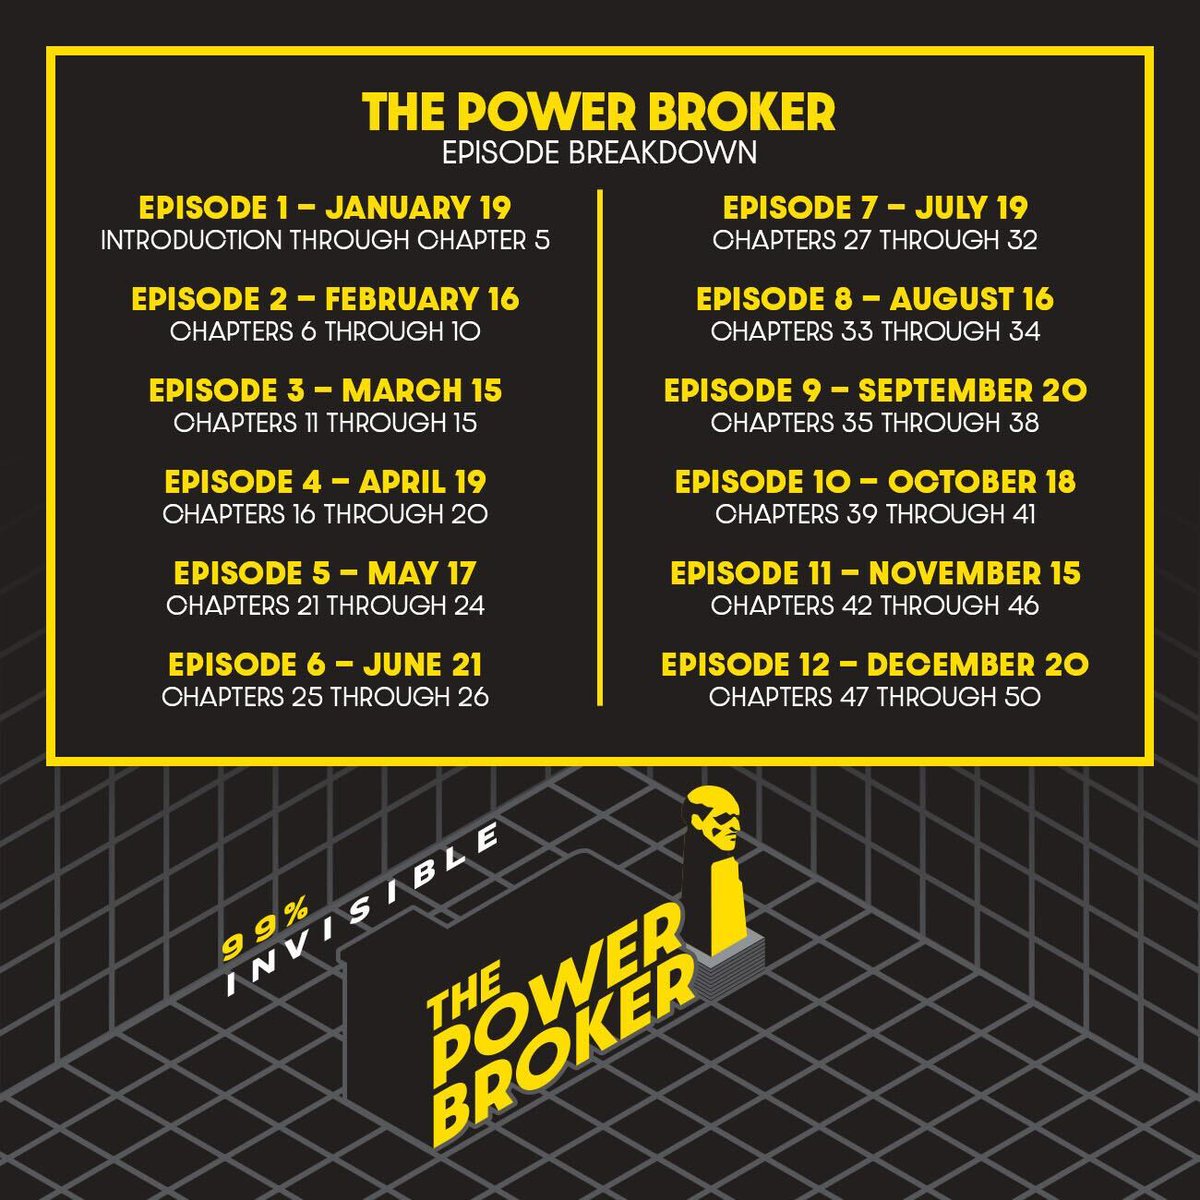 The Power Broker schedule...